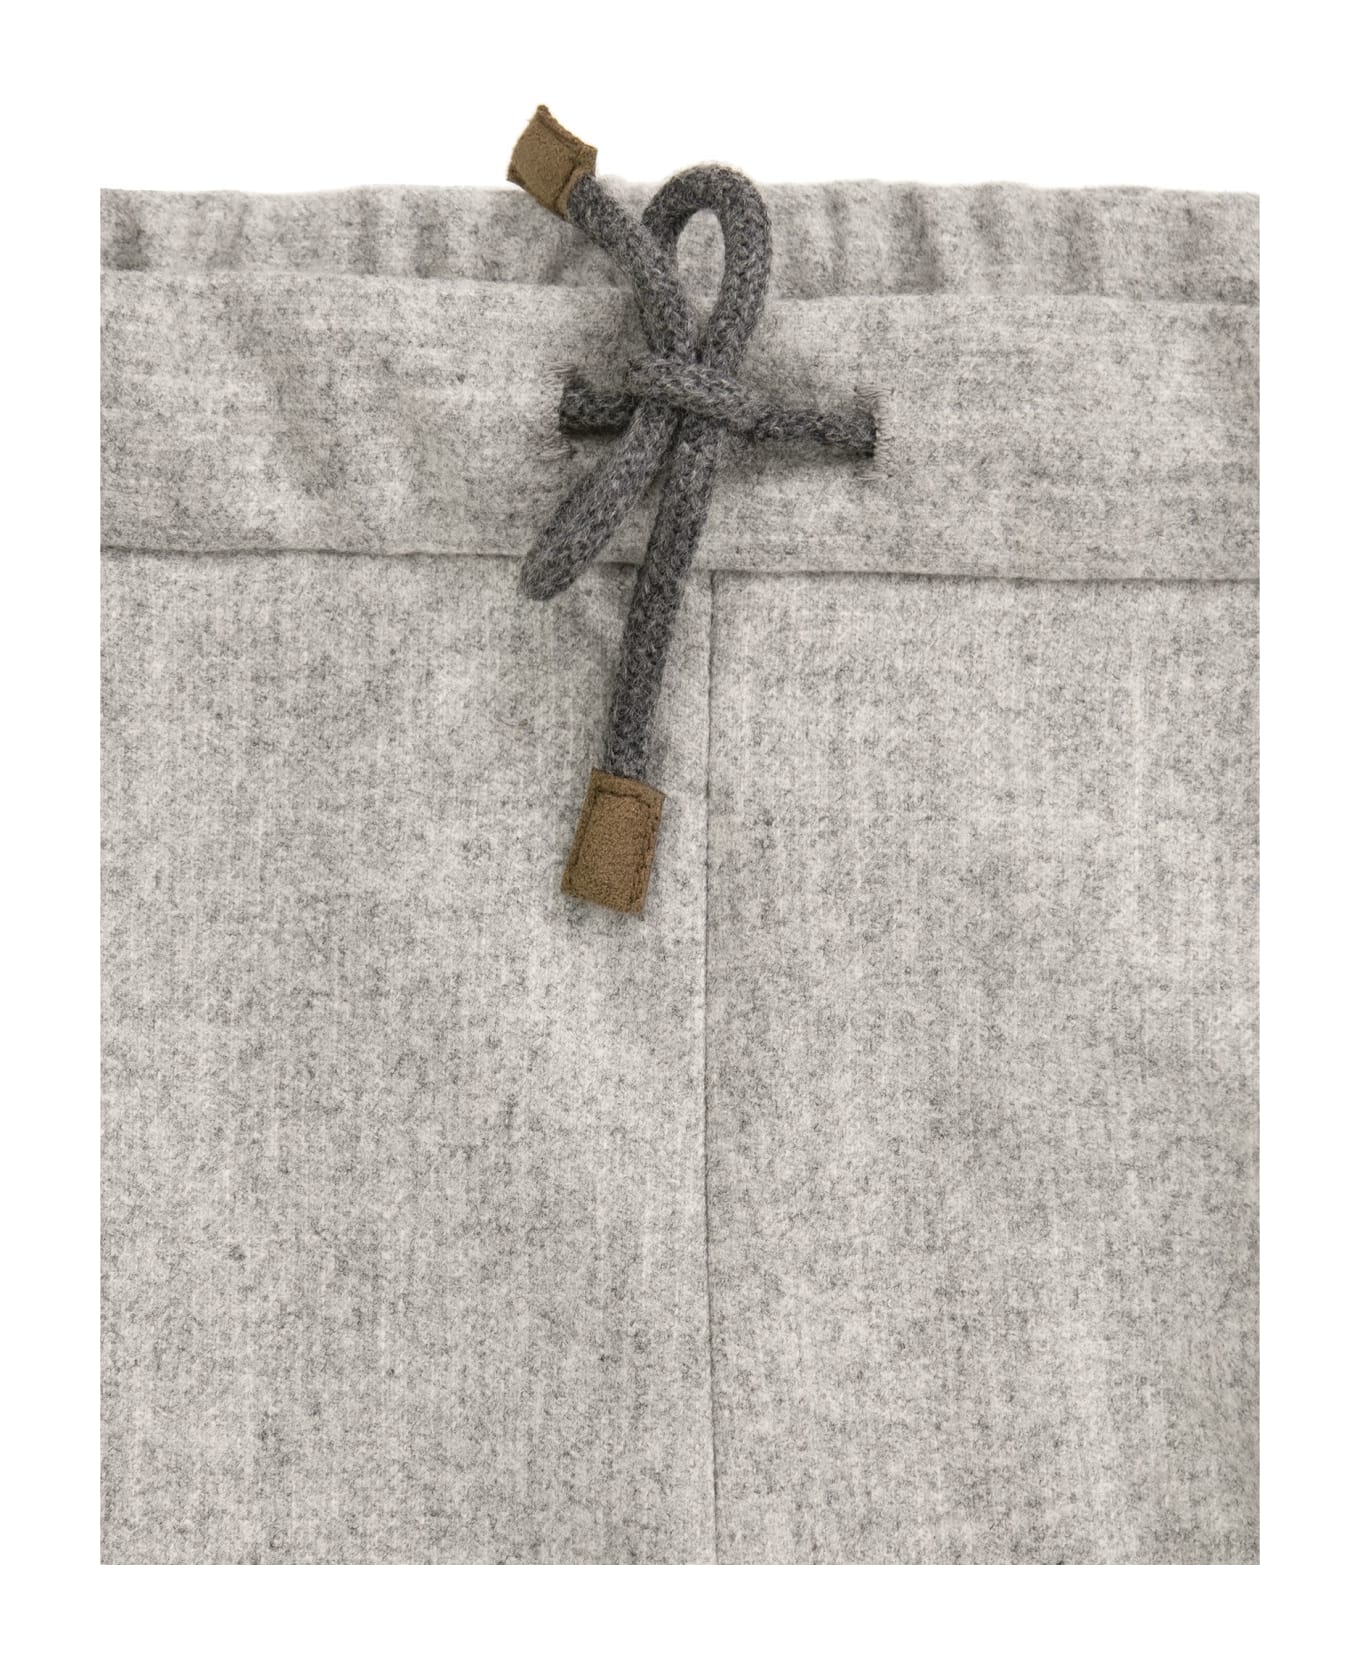 Brunello Cucinelli Wool Trousers - Melange Grey